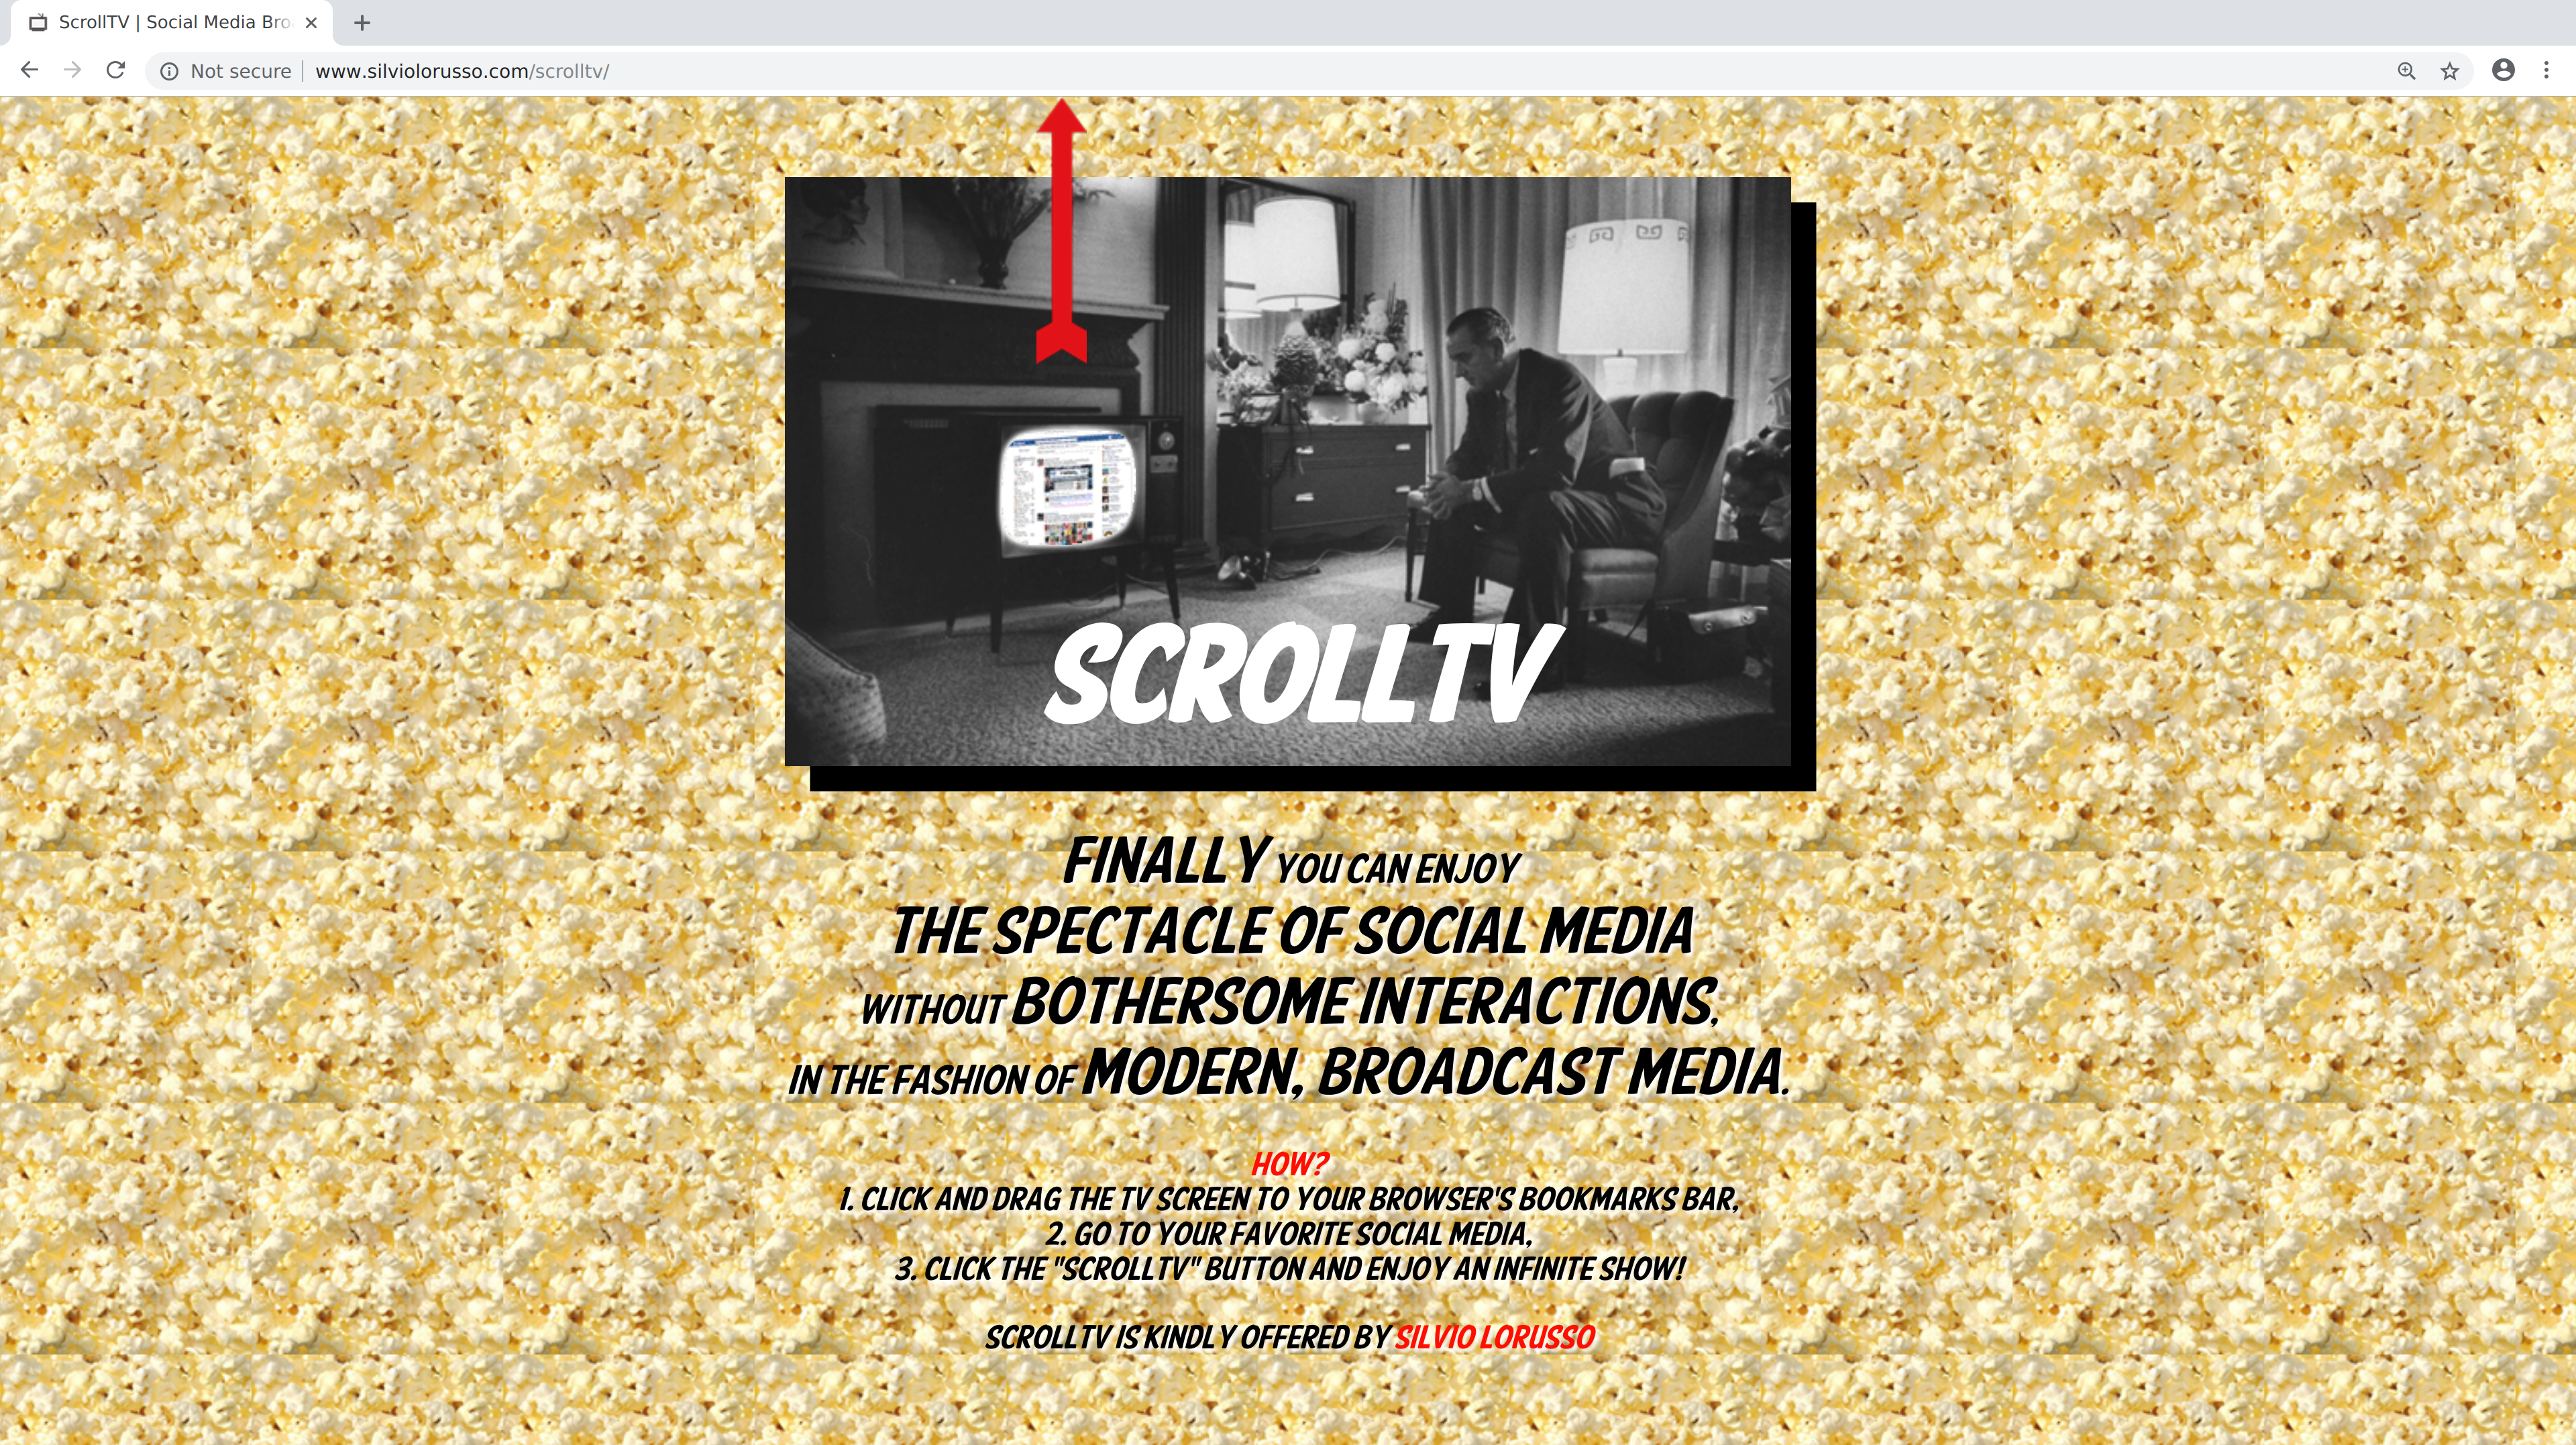 Homepage of ScrollTV